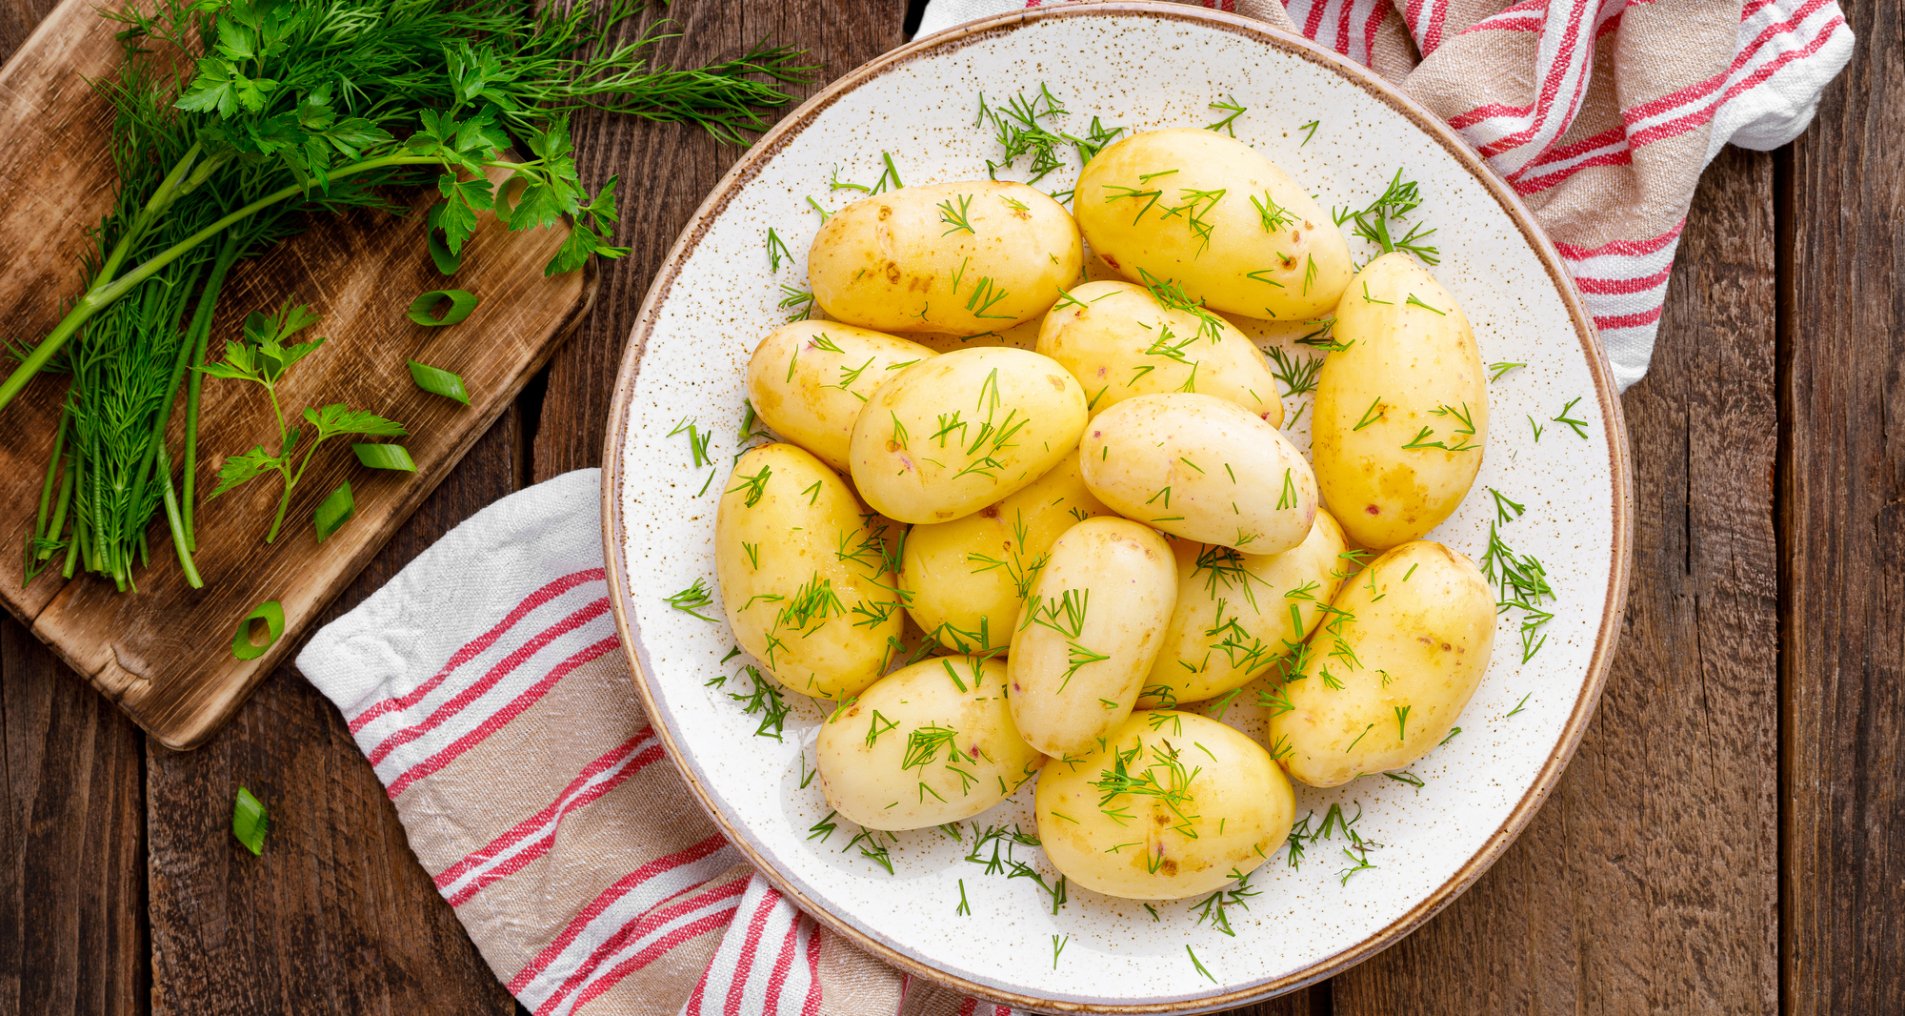 Весеннее меню. Три лучших рецепта из молодой картошки